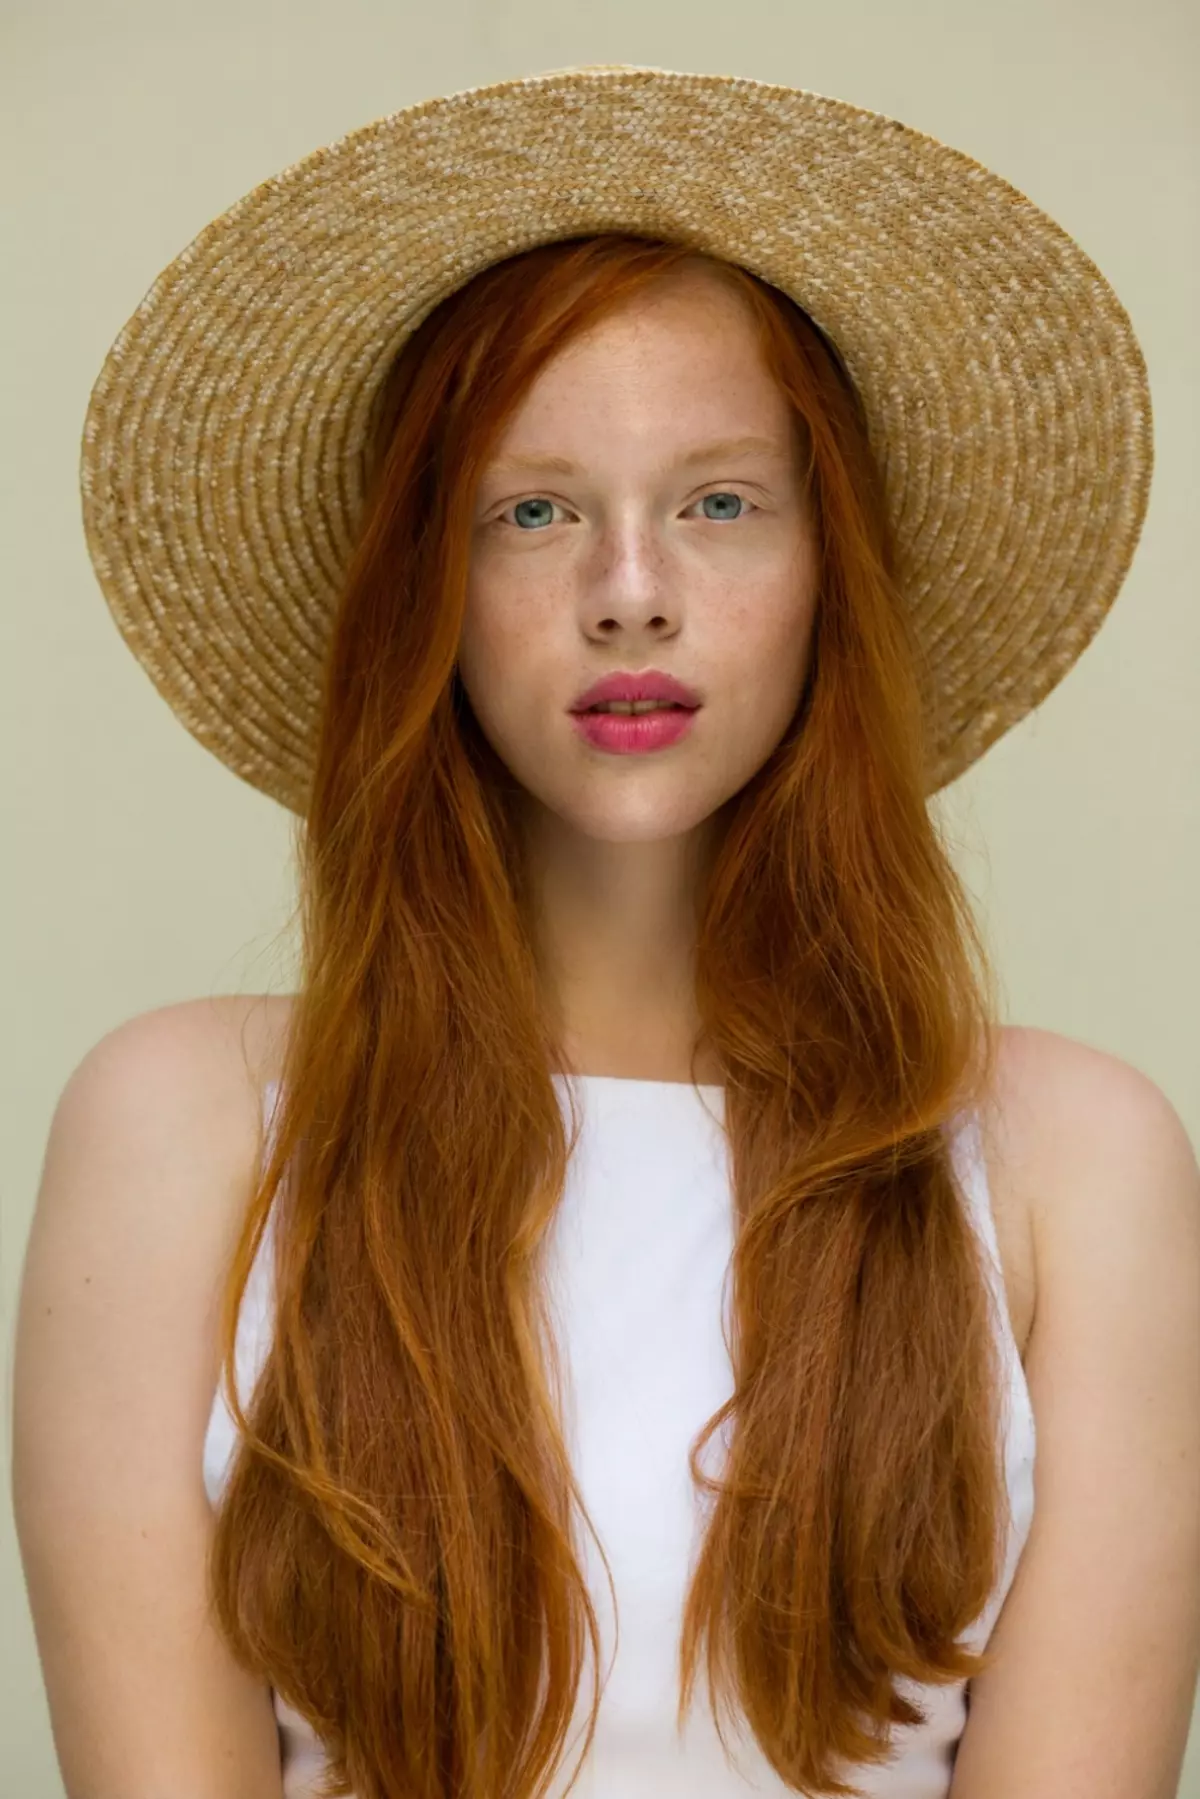 Κούρεμα σε κόκκινα μαλλιά (55 φωτογραφίες): Hairstyles στο μεσαίο μήκος των μαλλιών του χαλκού-κόκκινο χρώμα με κτυπήματα, επιλέξτε ένα Kara, Pixie ή Bob 6006_37